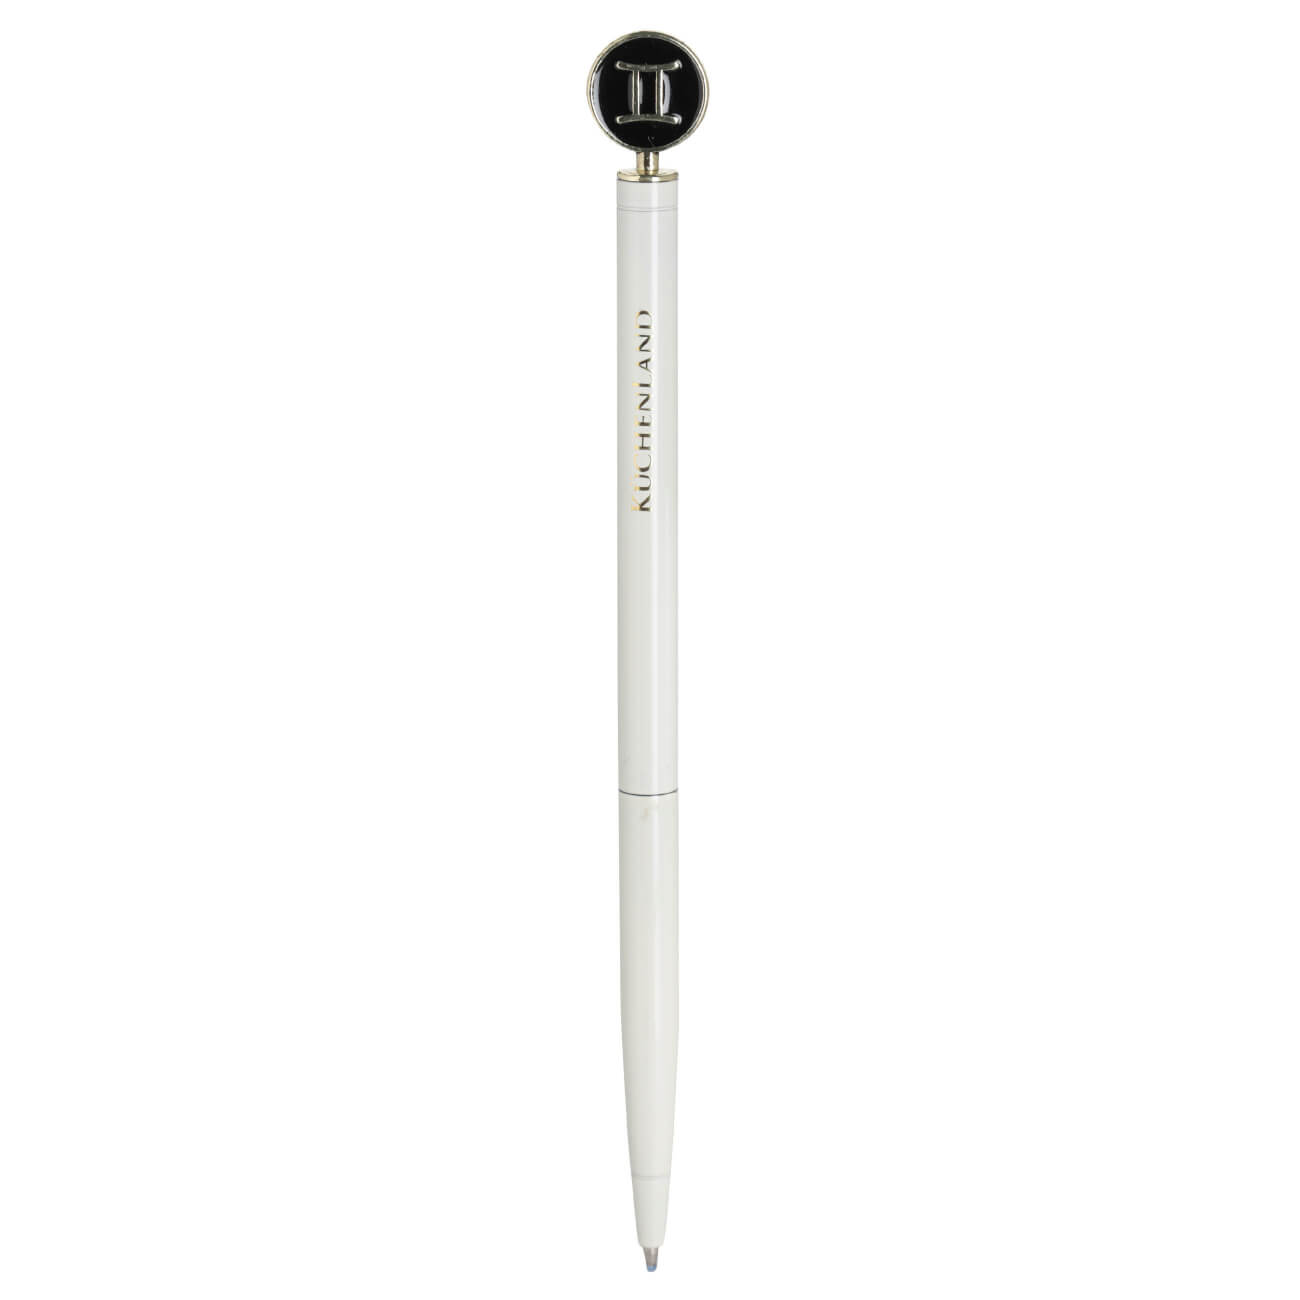 Ручка шариковая, 15 см, с фигуркой, сталь, молочно-золотистая, Близнецы, Zodiac ручка шариковая